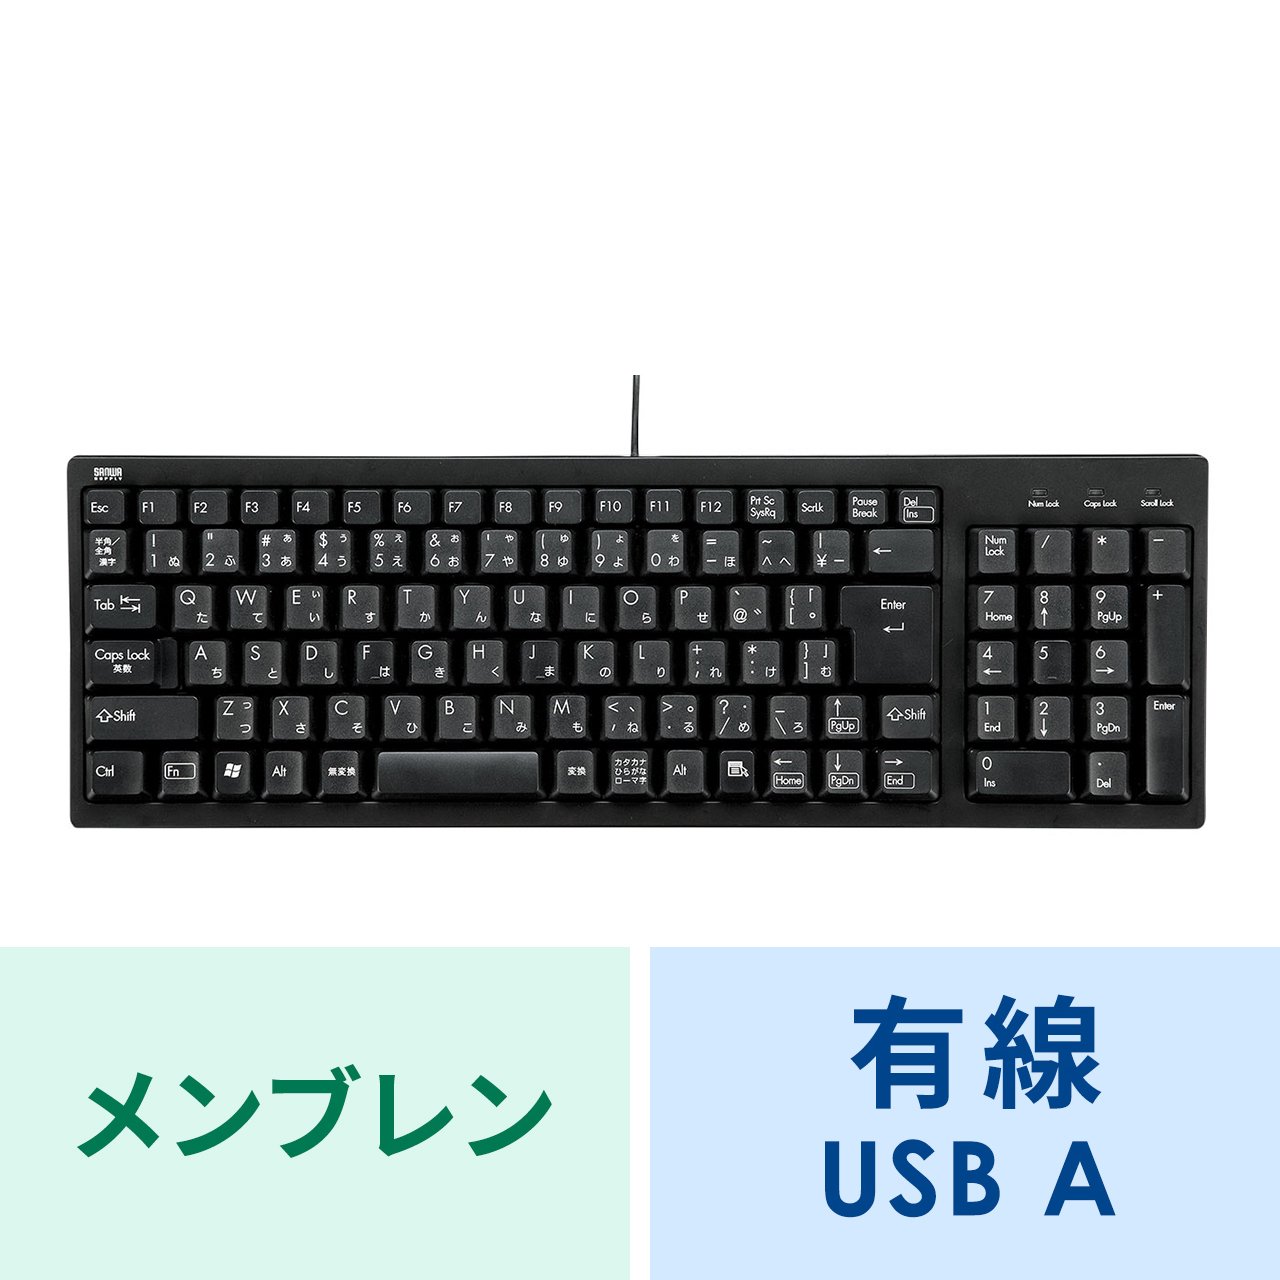 有線キーボード(USB A) テンキーあり メンブレン 日本語配列(JIS 